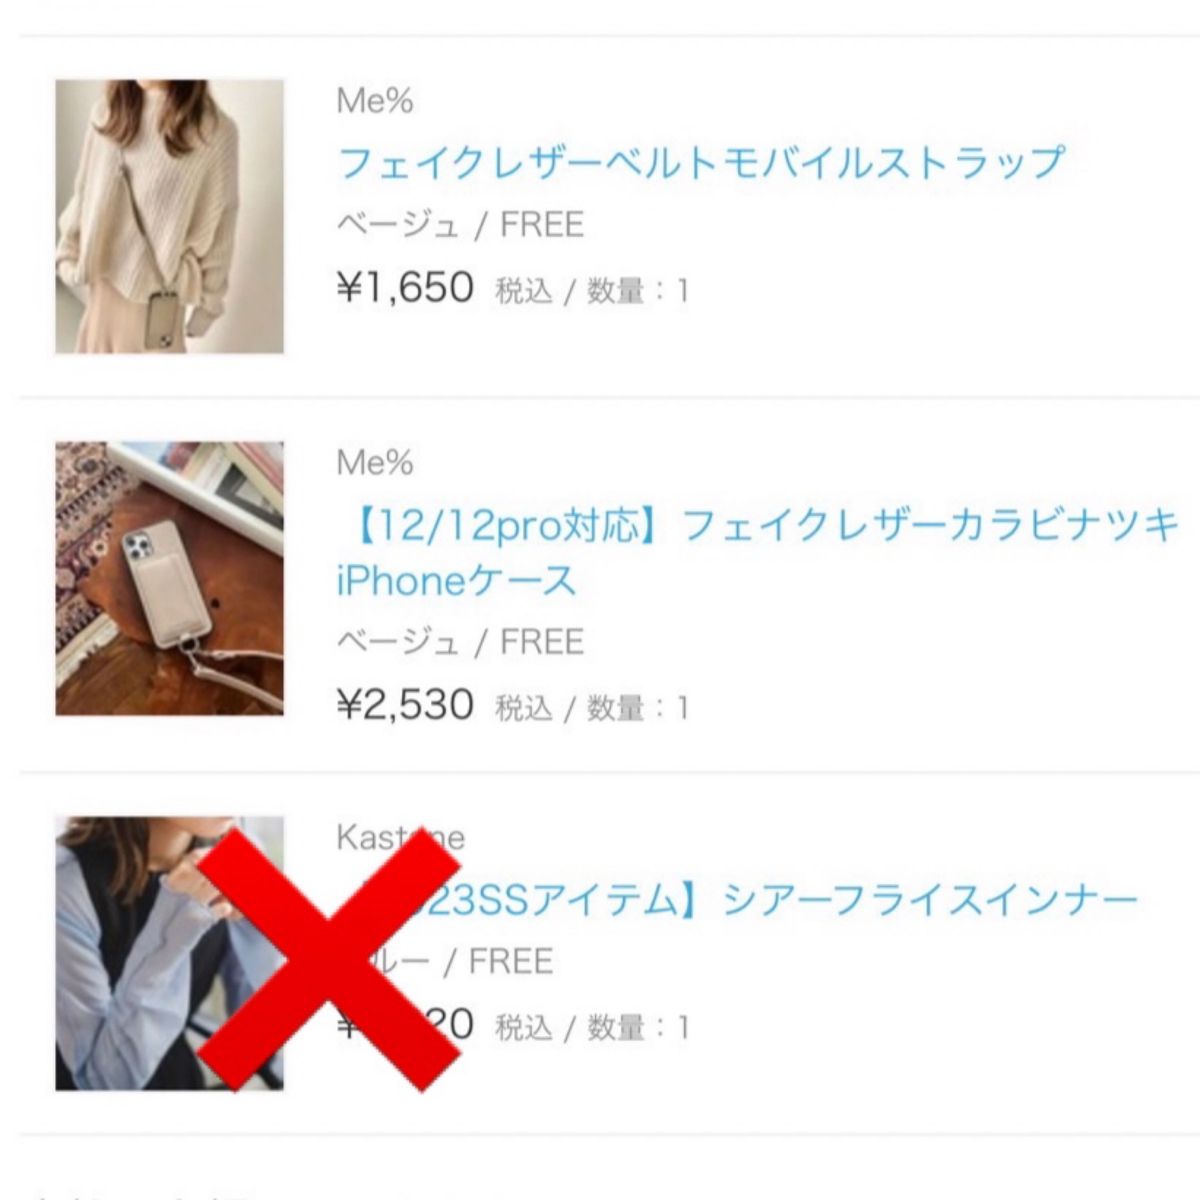 Me% 【12/12Pro対応】 フェイクレザーiPhoneケース、ストラップ